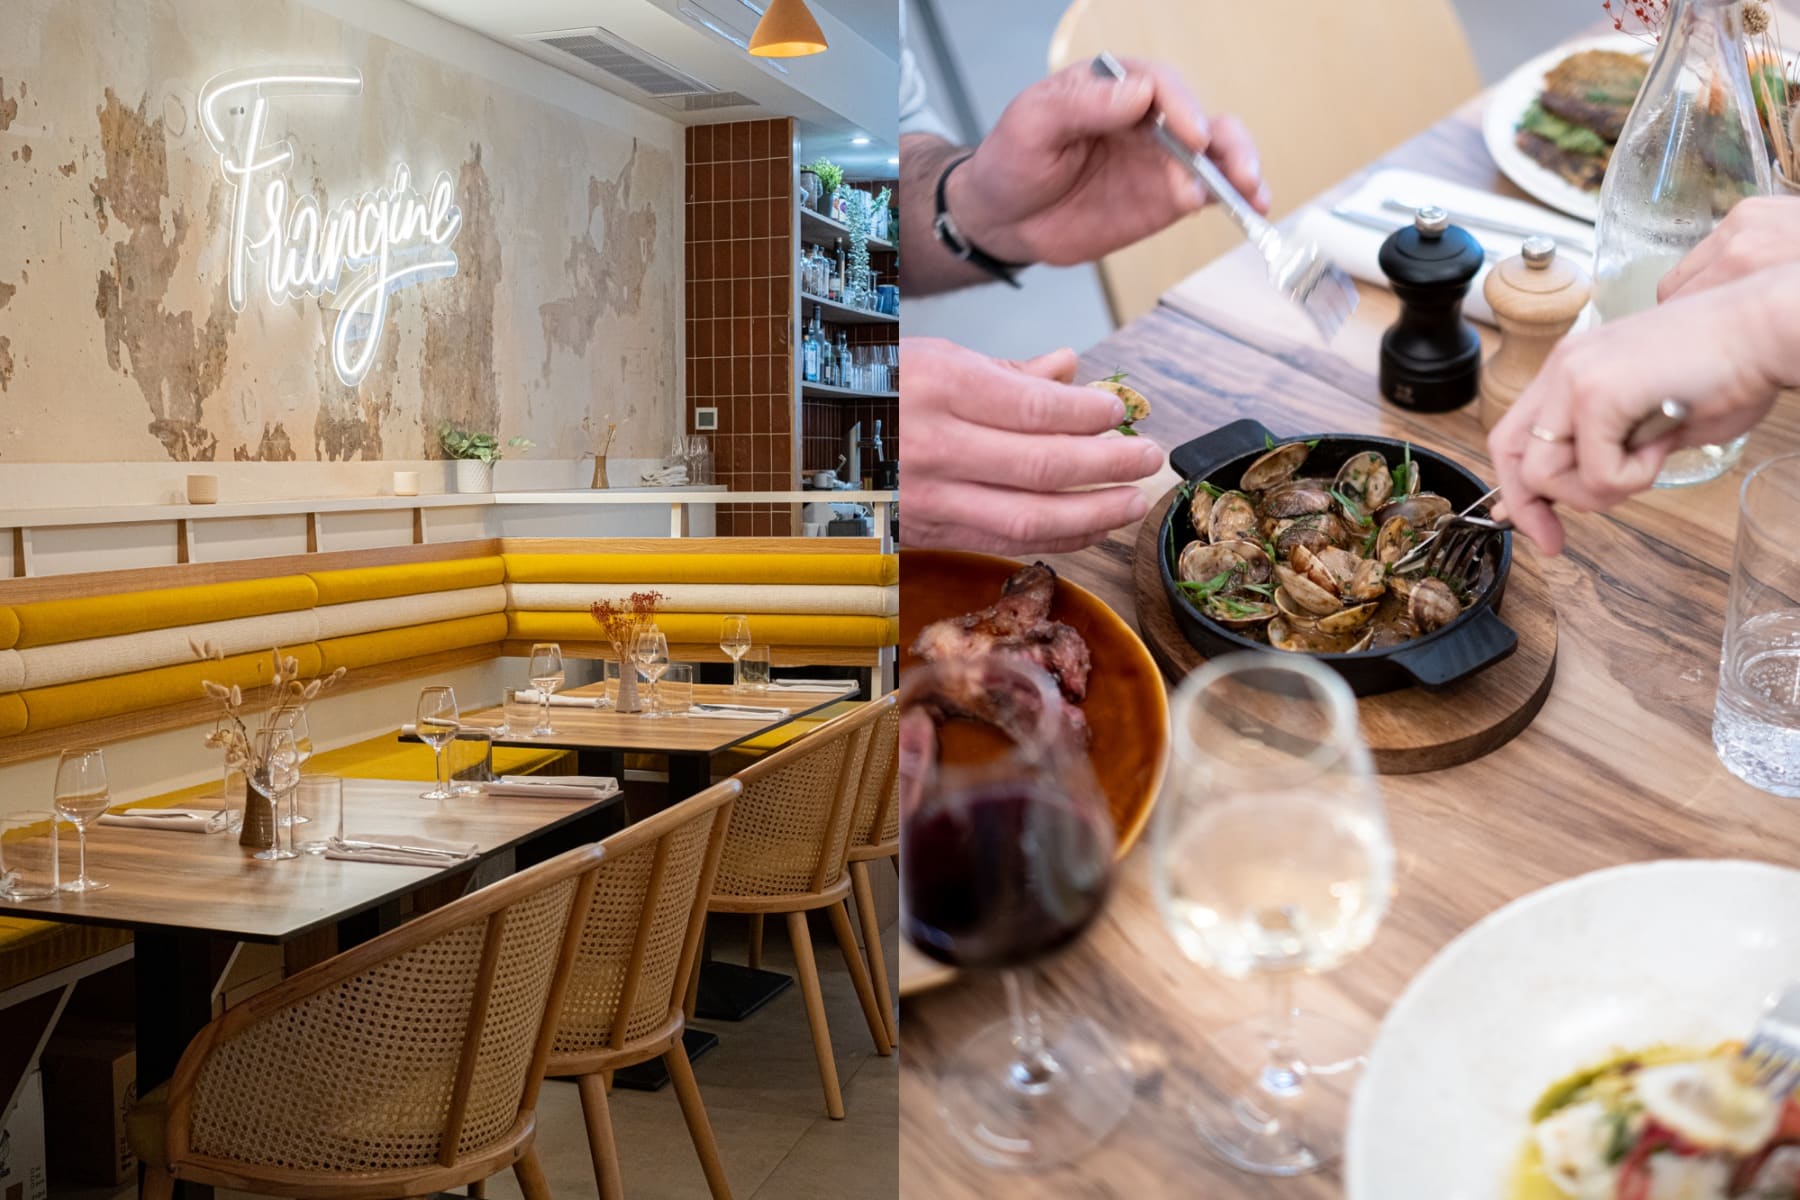 Frangine, Frangine, le nouveau restaurant qui remet au goût du jour la cuisson à la braise, Made in Marseille